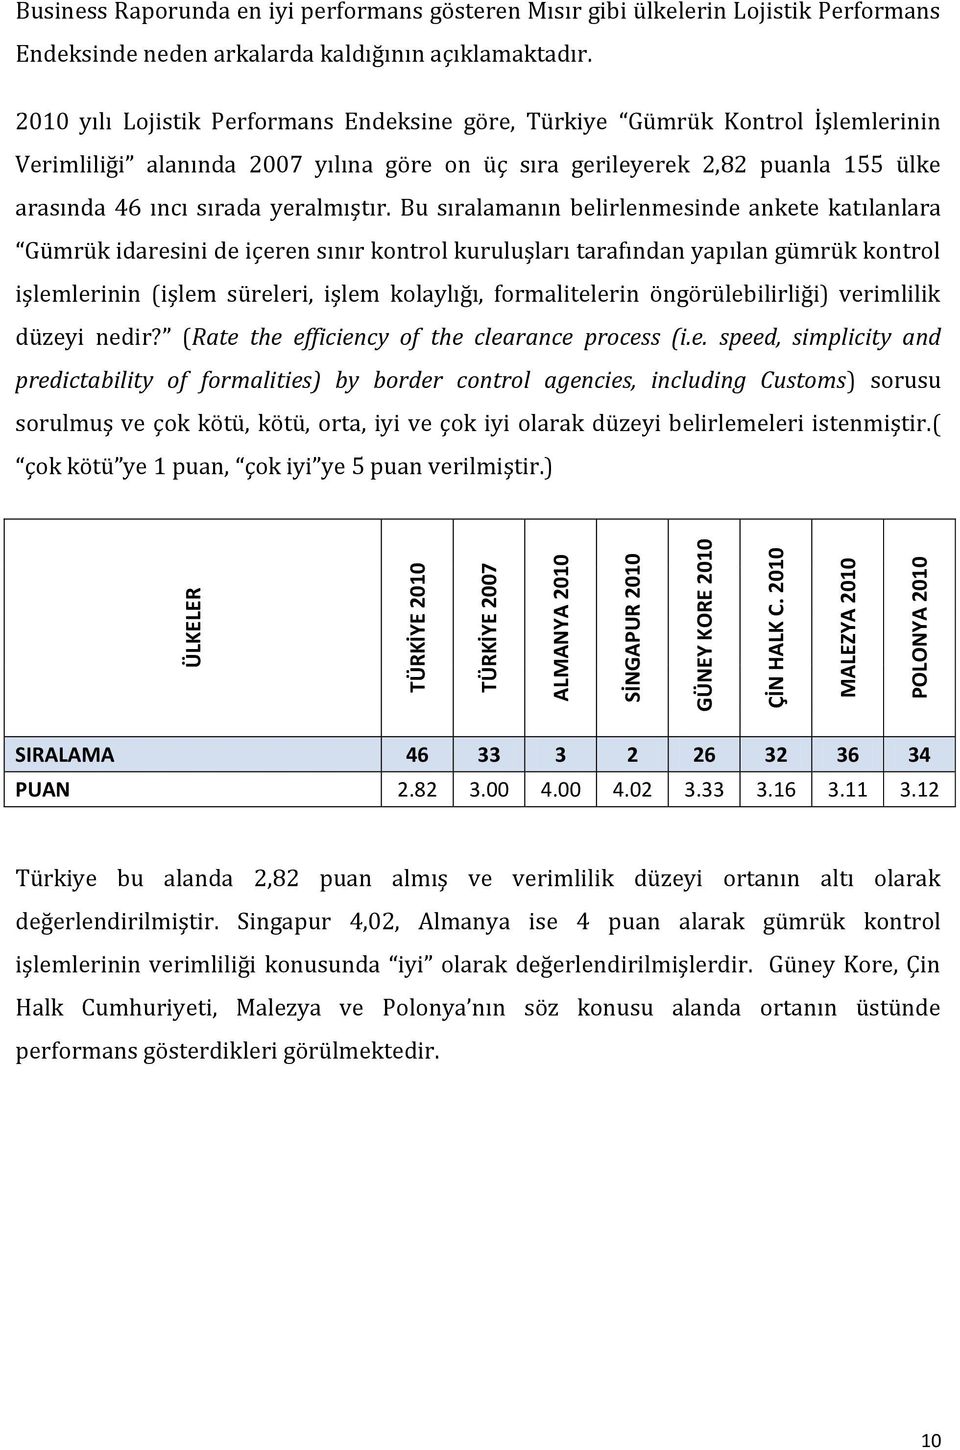 2010 yılı Lojistik Performans Endeksine göre, Türkiye Gümrük Kontrol İşlemlerinin Verimliliği alanında 2007 yılına göre on üç sıra gerileyerek 2,82 puanla 155 ülke arasında 46 ıncı sırada yeralmıştır.